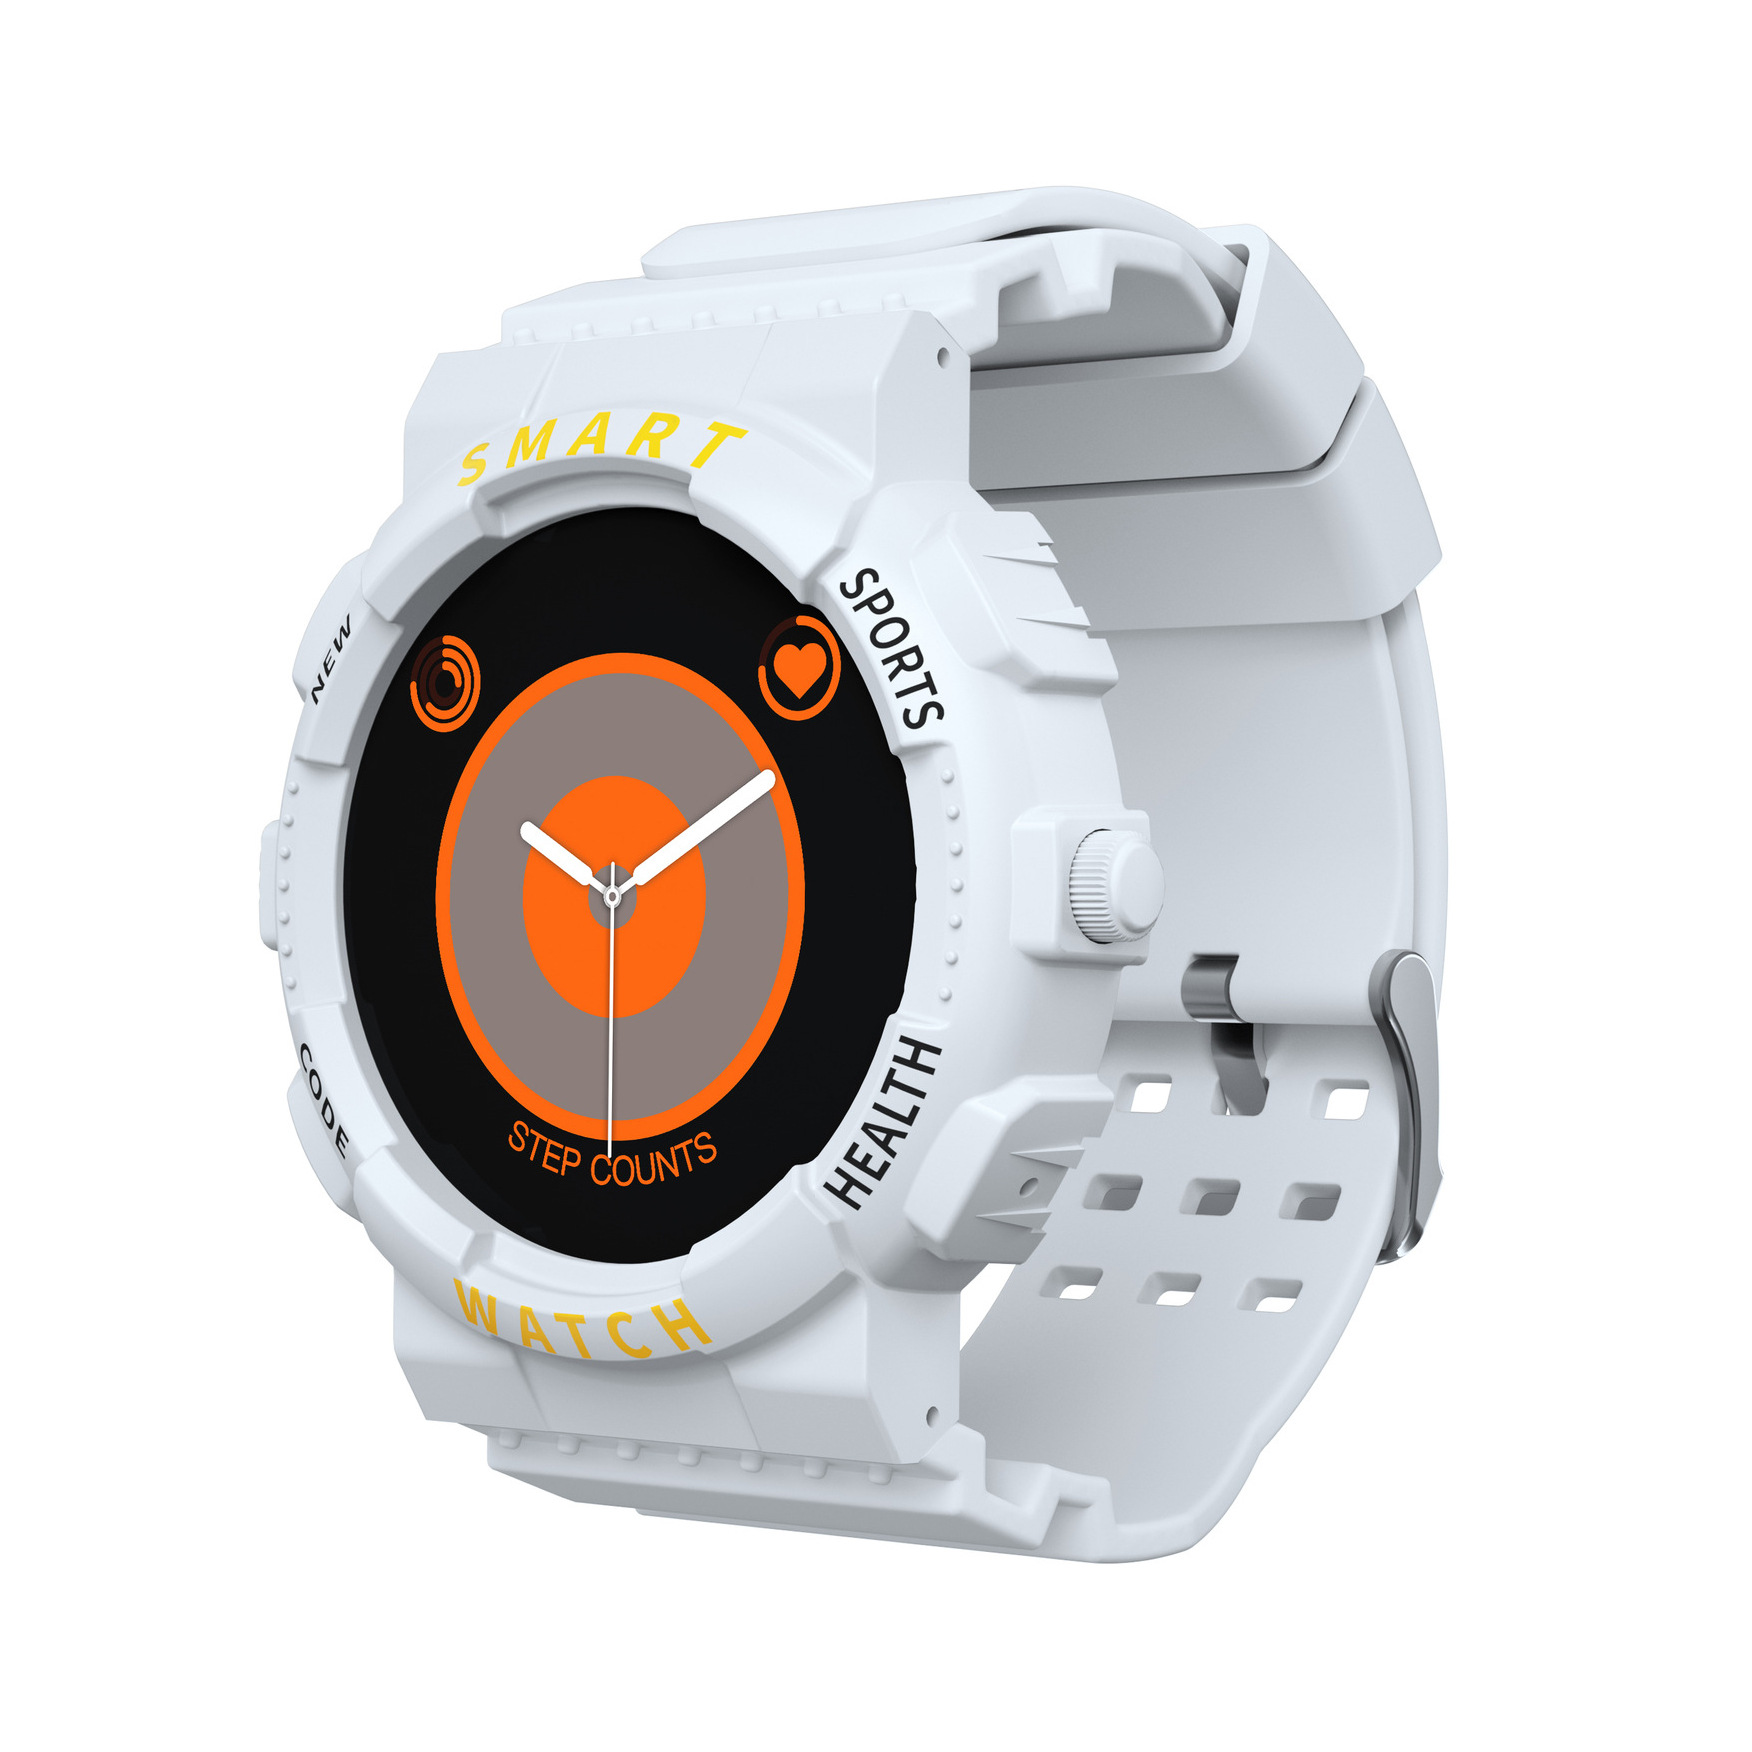 厂家现货Z19智能手表健康监测自定义表盘蓝牙通话手环smart watch